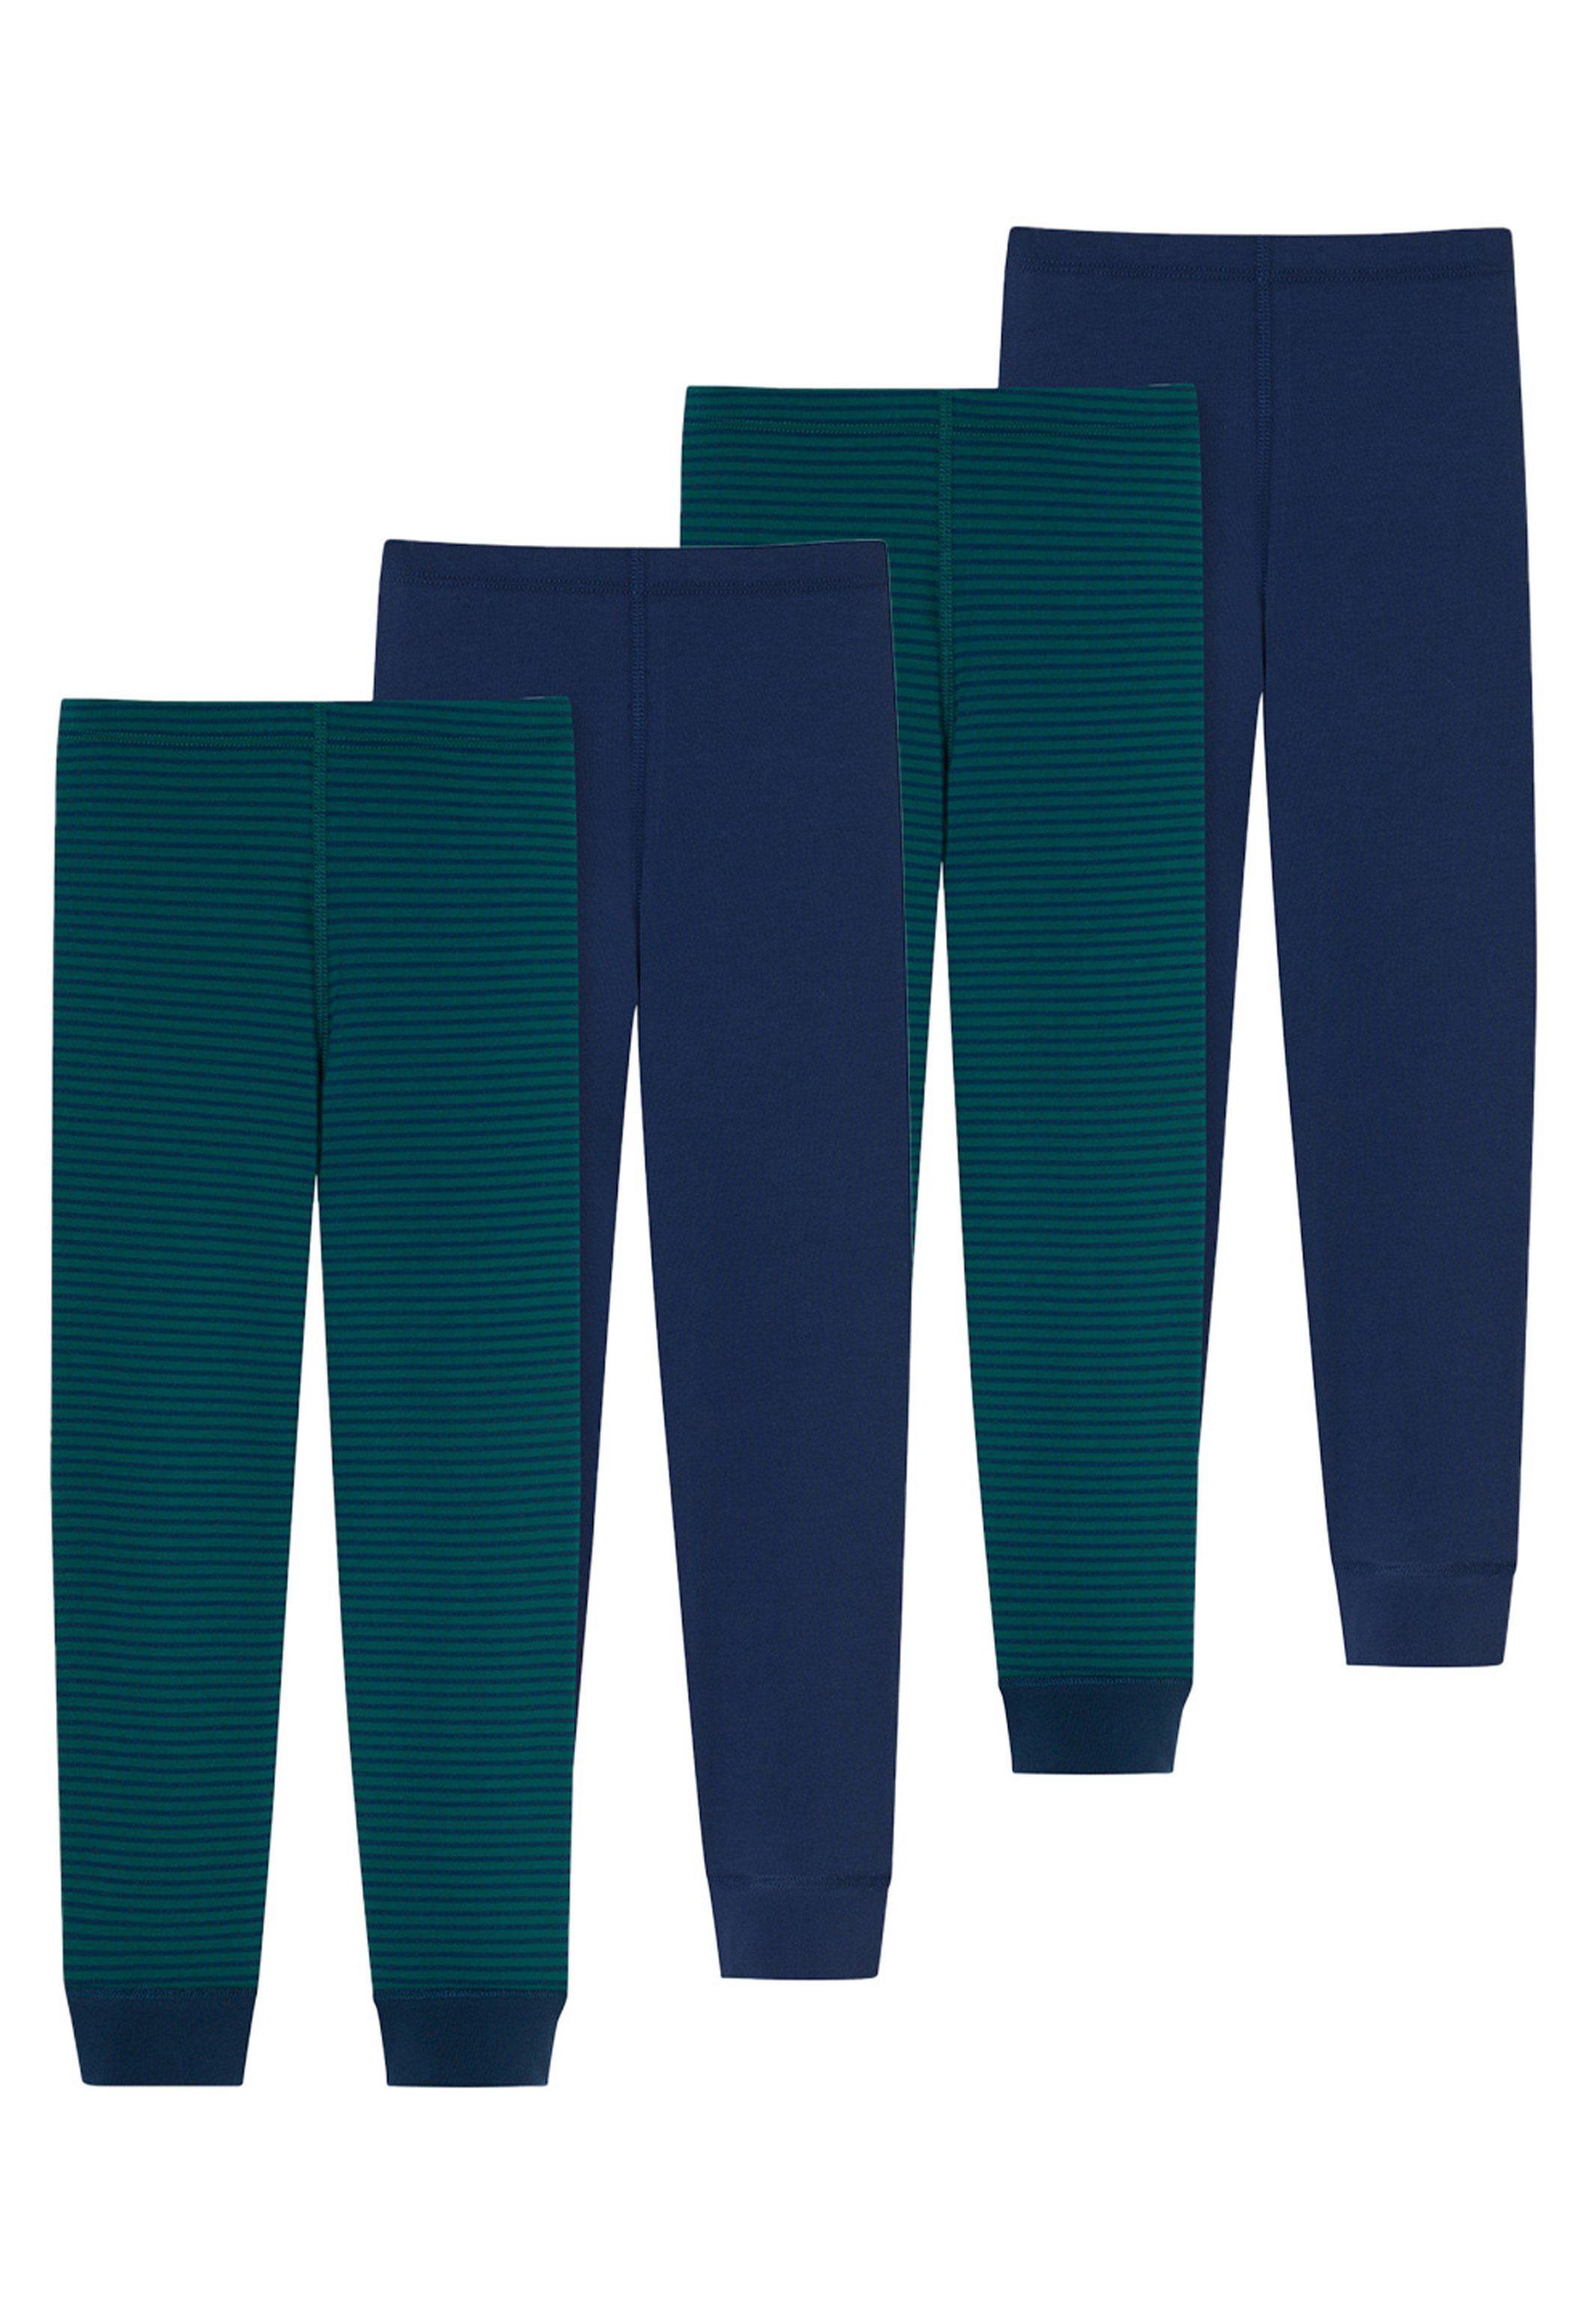 Schiesser Lange Unterhose 4er Pack 95/5 Organic Cotton (Spar-Set, 4-St) Lange Unterhose - Baumwolle - Ohne Eingriff - Grün / Blau